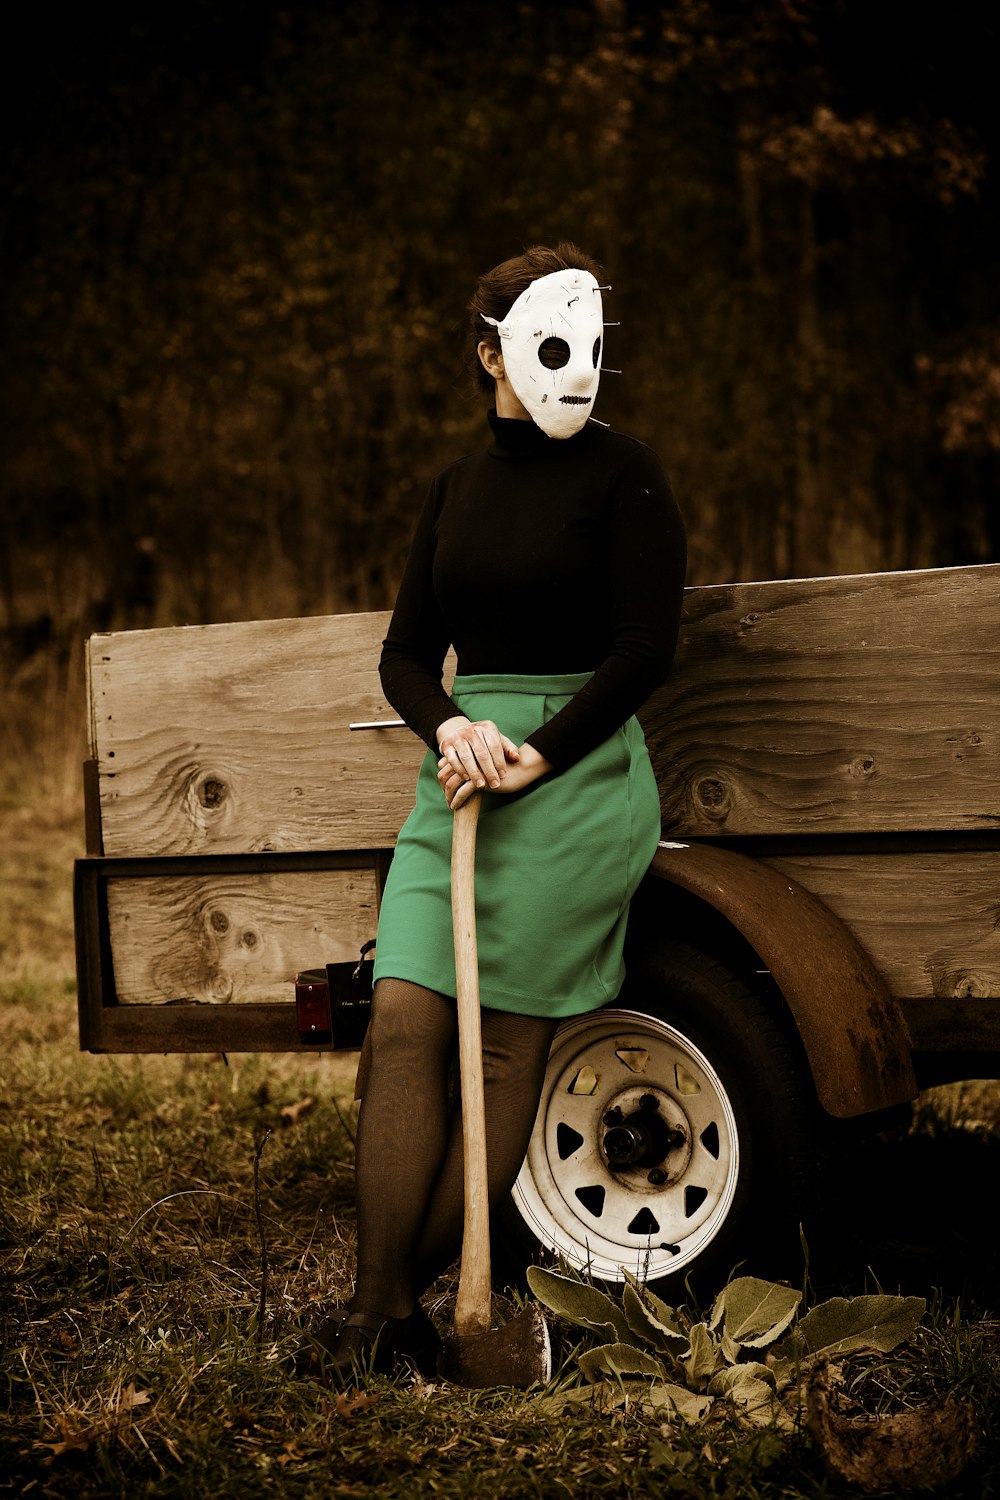 Una mujer sentada en un banco con una máscara y sosteniendo un bate de béisbol